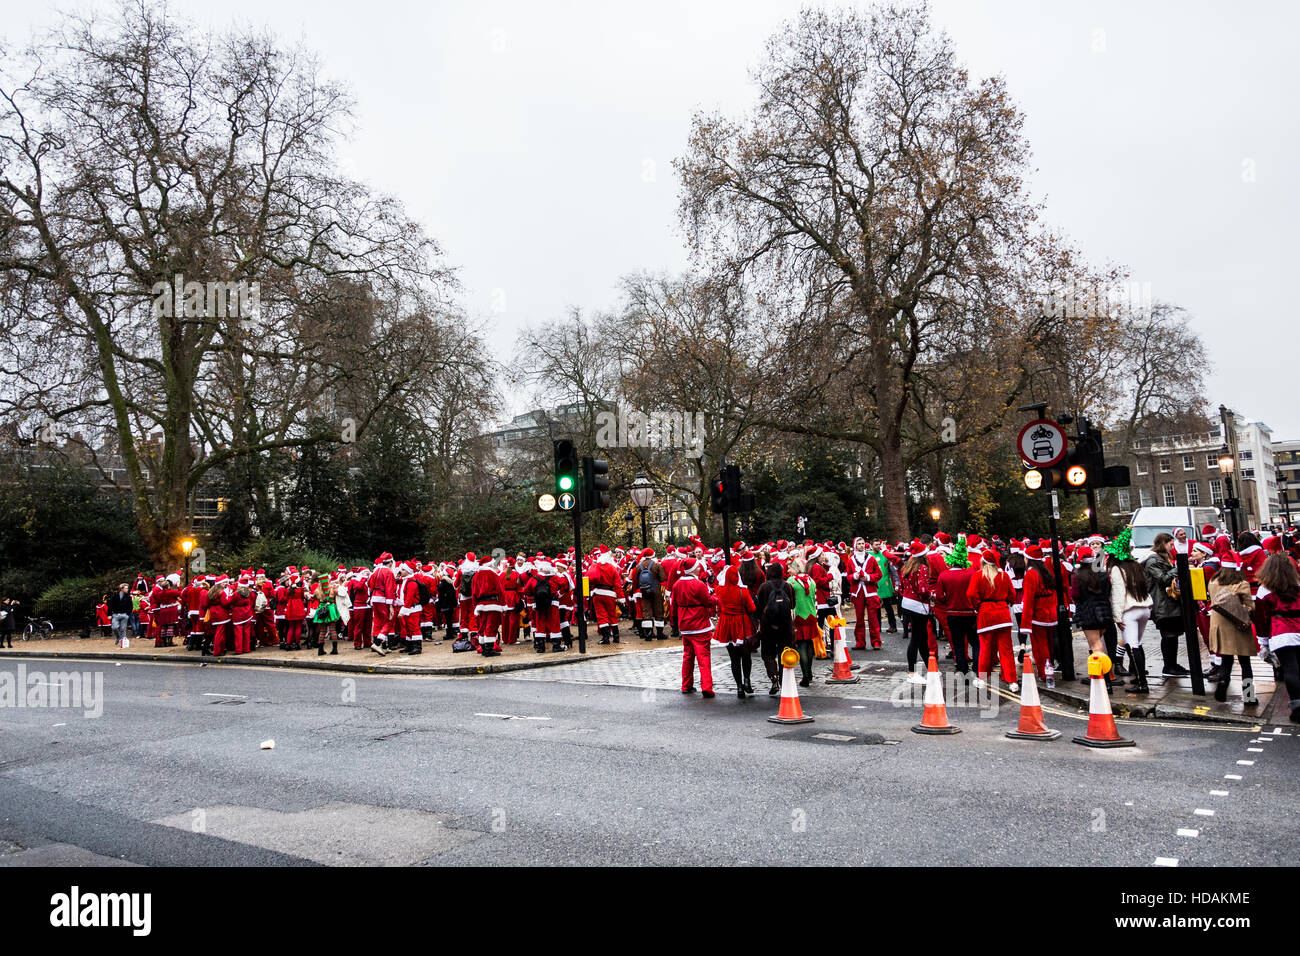 Santacon Santas per le strade di Londra. Santacon è una parata natalizia non religiosa che normalmente si svolge a Londra un sabato ogni dicembre. Foto Stock